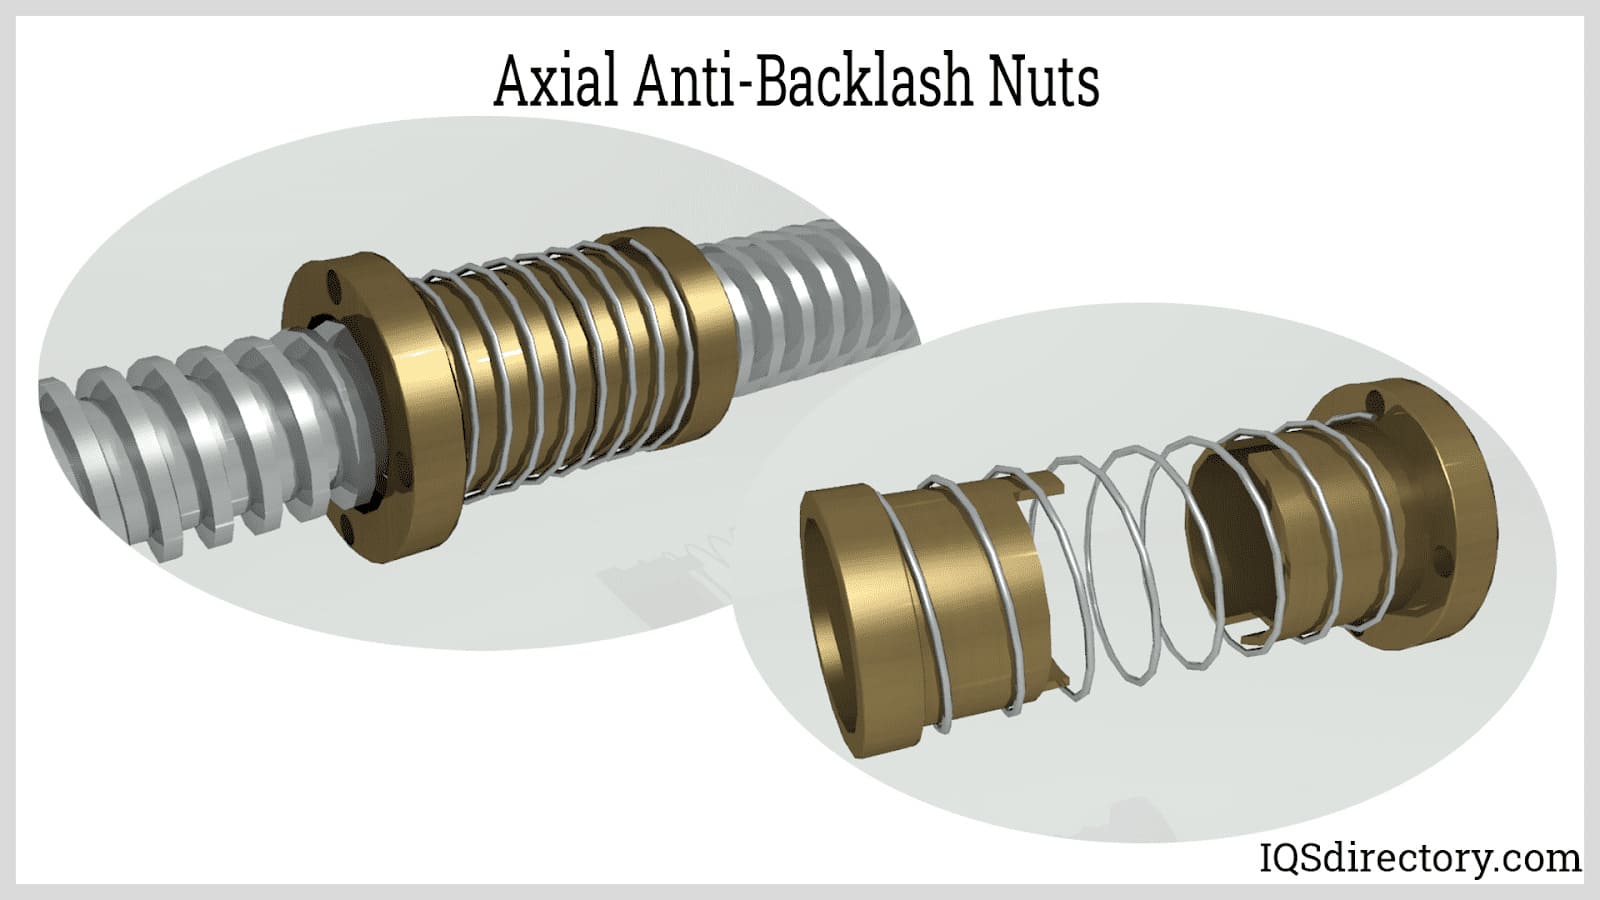 Axial Anti-Backlash Nuts